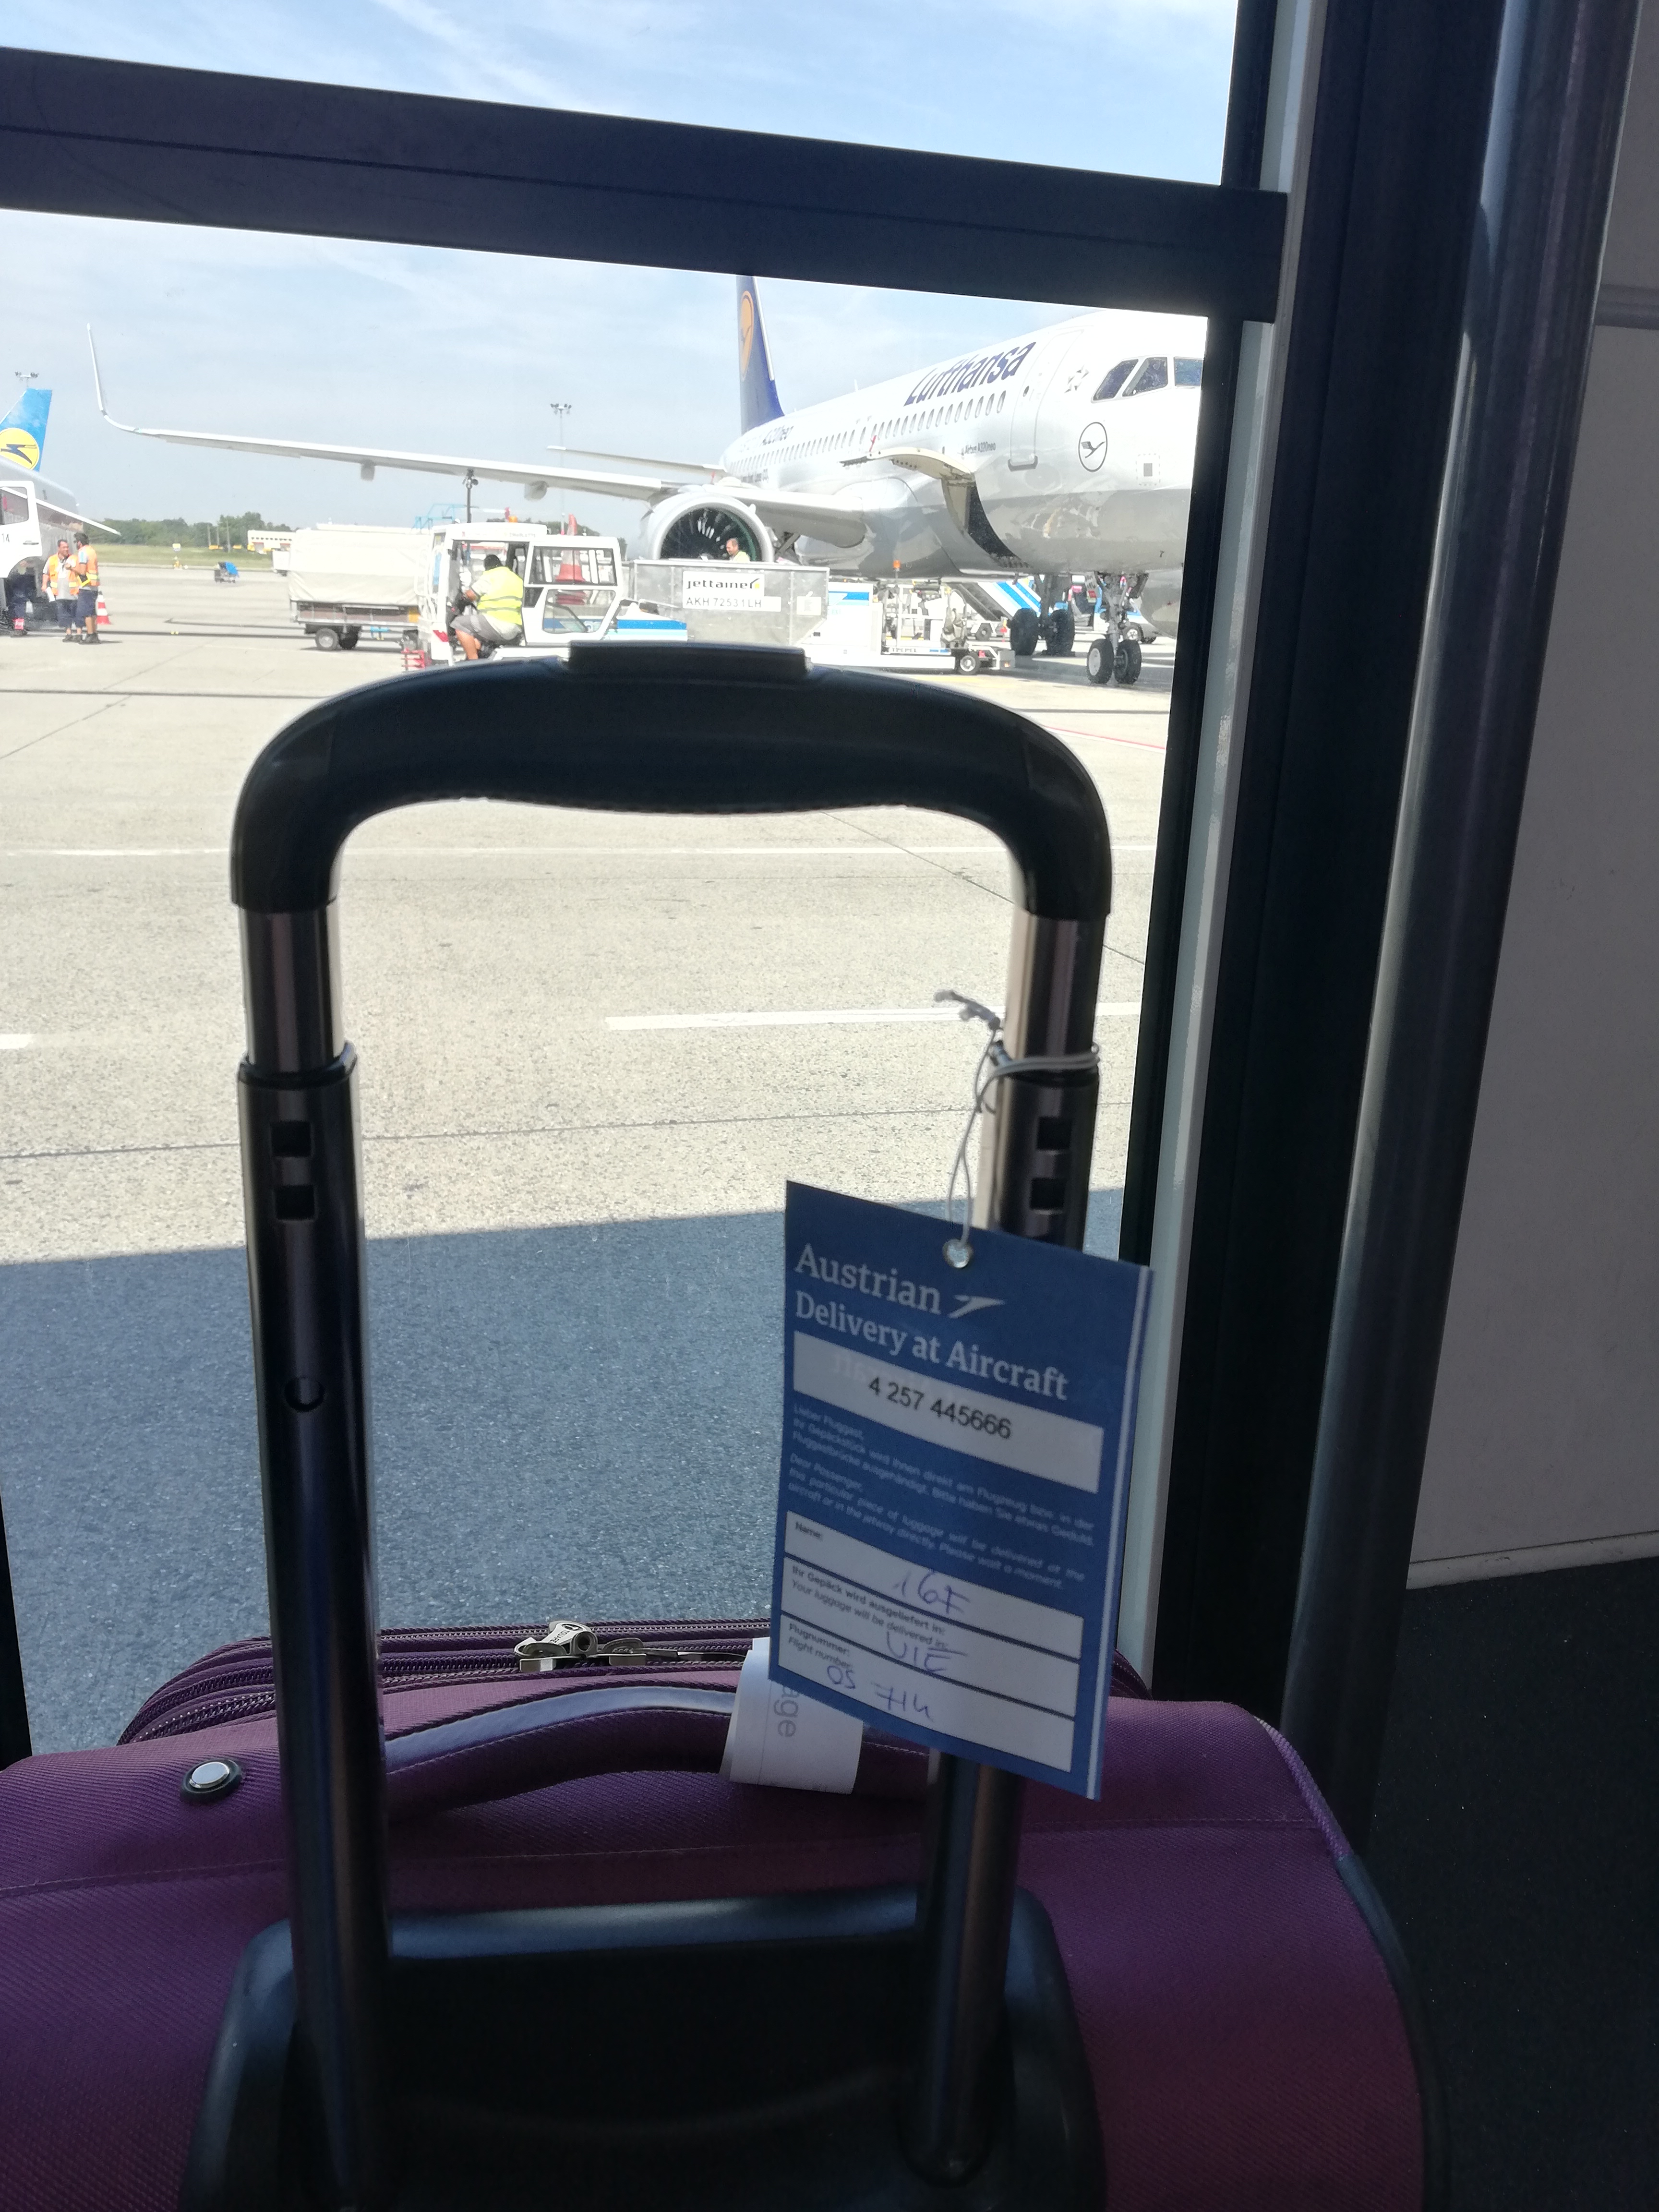 Már boarding, vagyis szállunk fel a reptérre, az Austrian Airlanes megtagelte a poggyászom